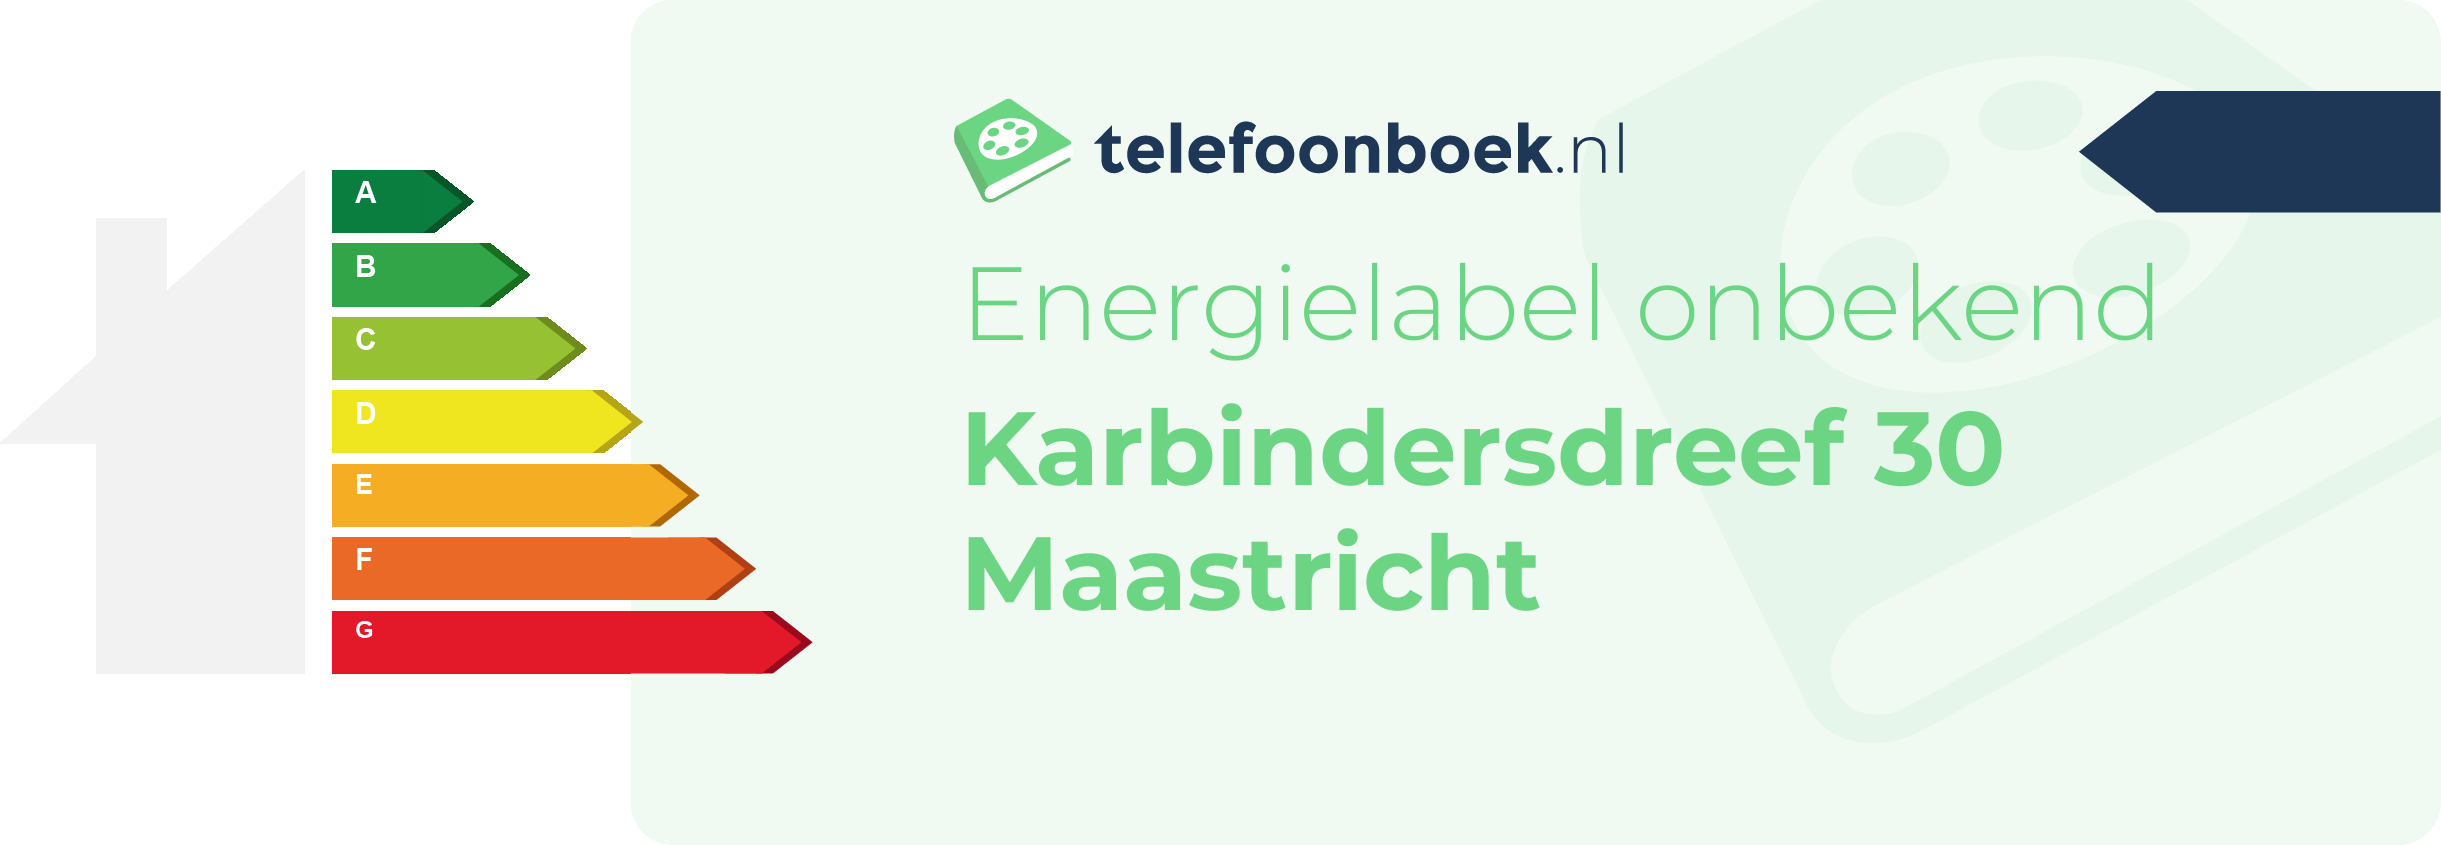 Energielabel Karbindersdreef 30 Maastricht